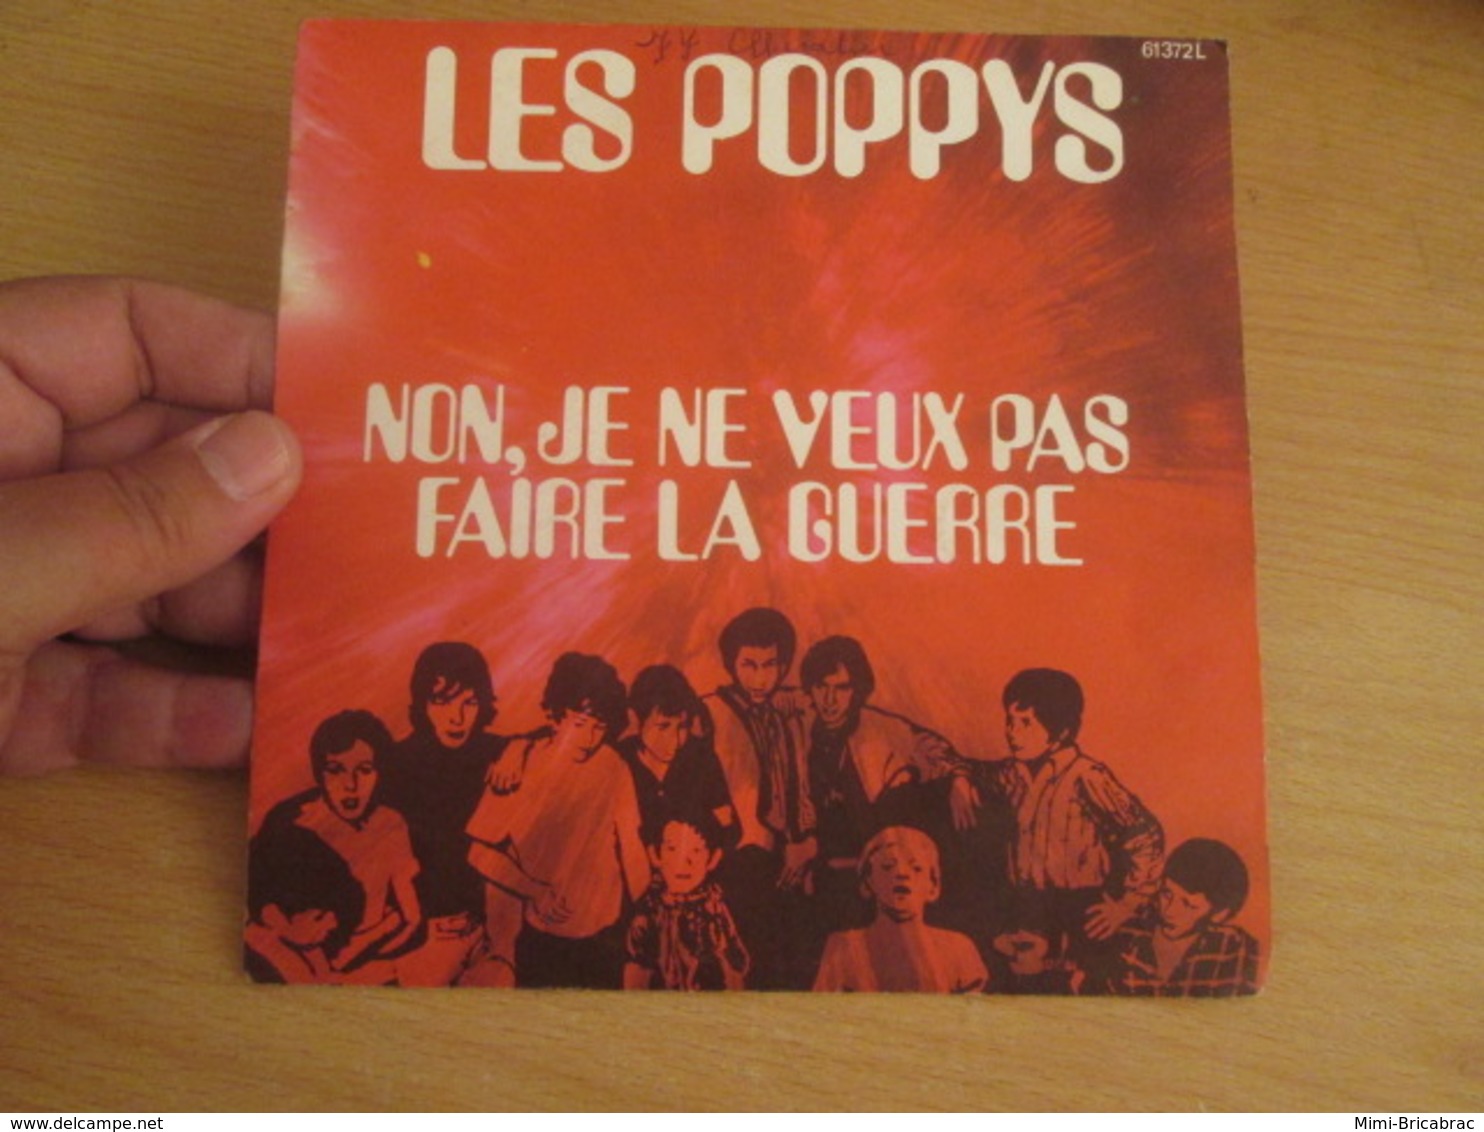 POPPYS Vinyle 45T 7" NOËL 70 - NON JE NE VEUX PAS FAIRE LA GUERRE -BARCLAY 61372 - World Music